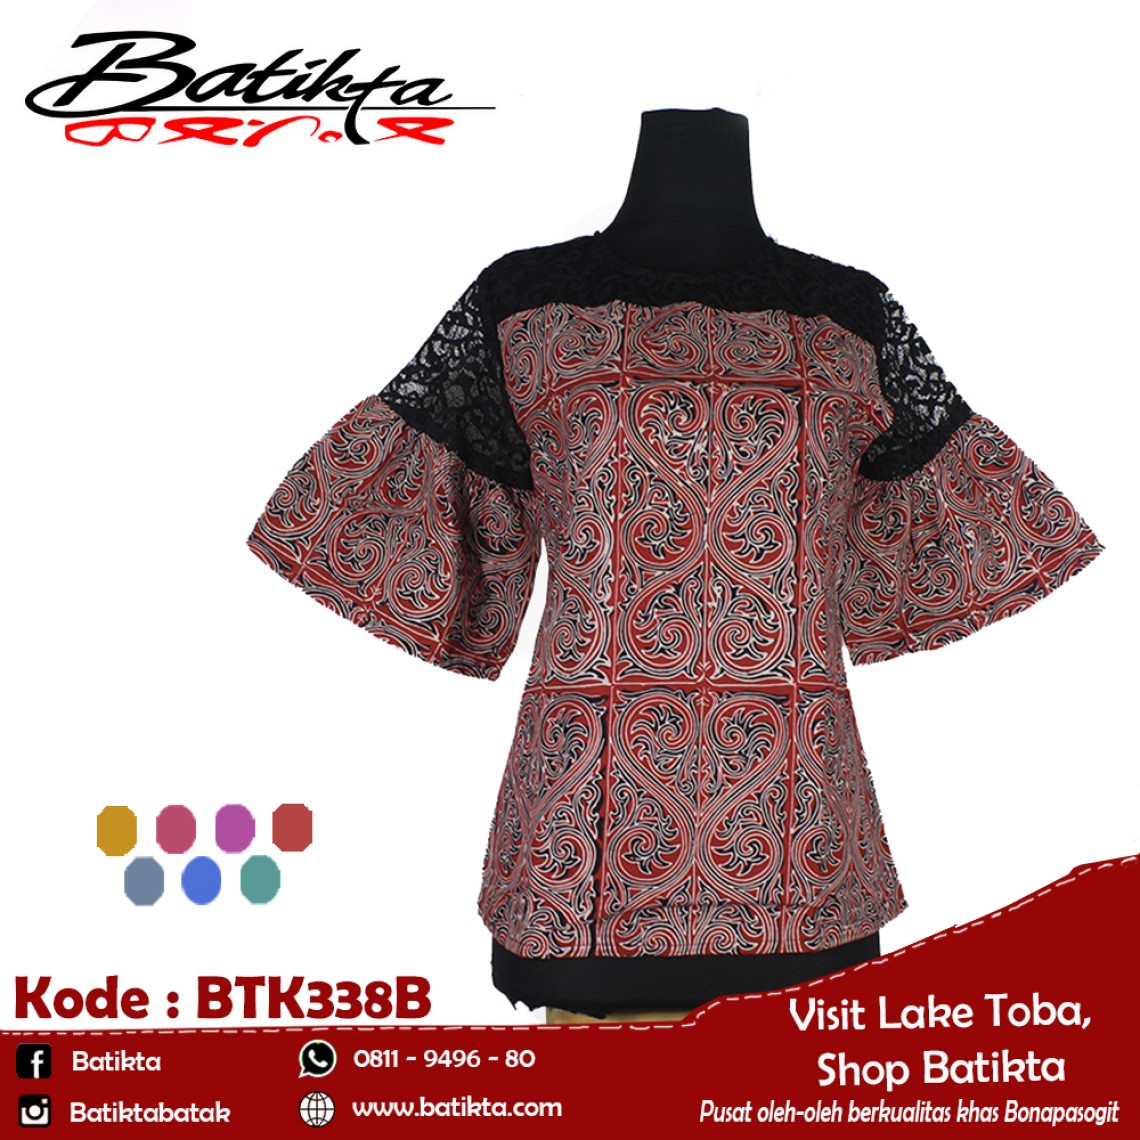 BTK338B Blus Batik Motif Gorga Warna Merah Putih Hitam profile picture